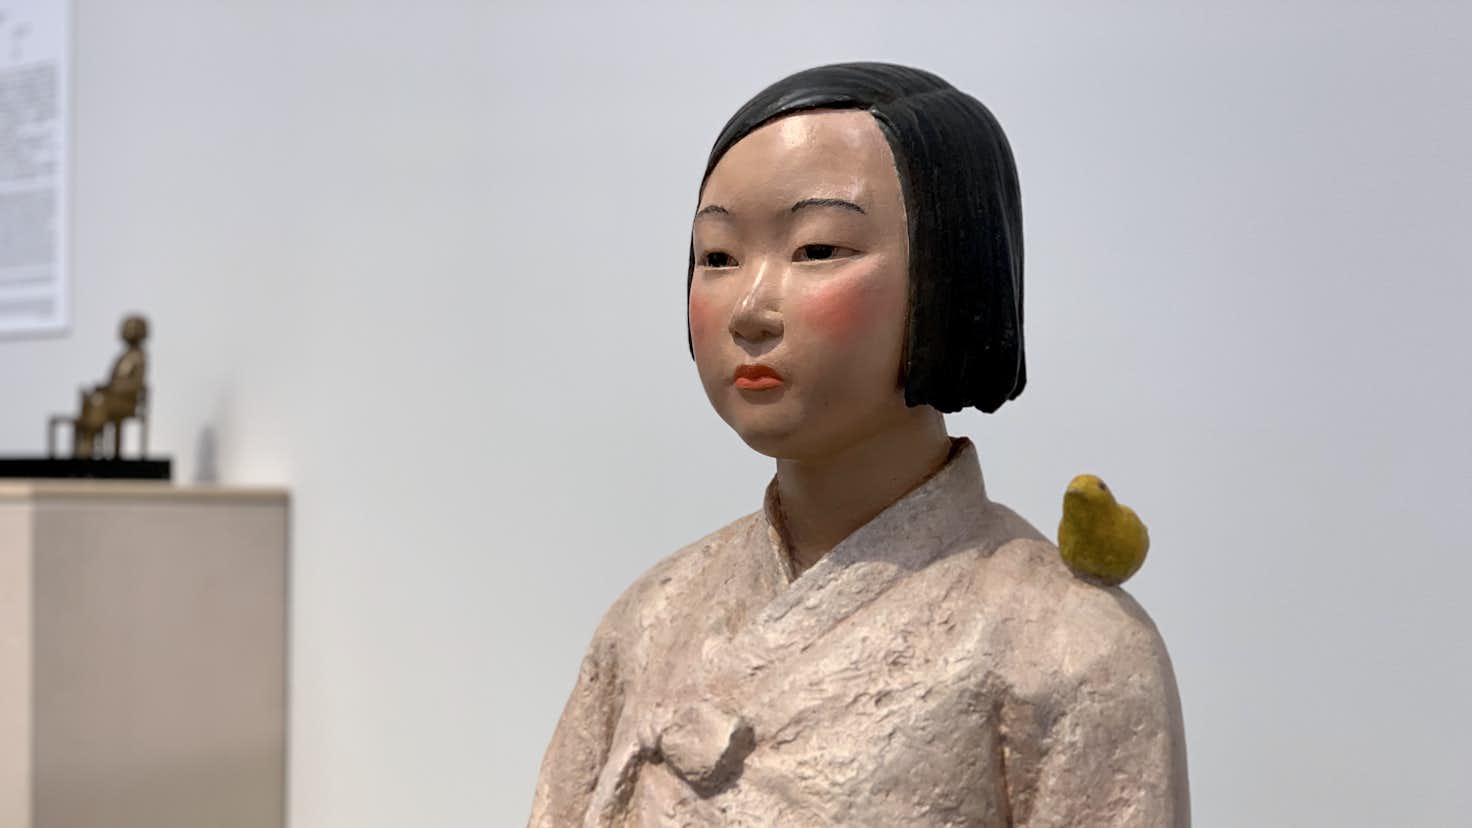 表現の不自由展 その後 台湾の美術館で開催へ 平和の少女像 も展示 美術手帖